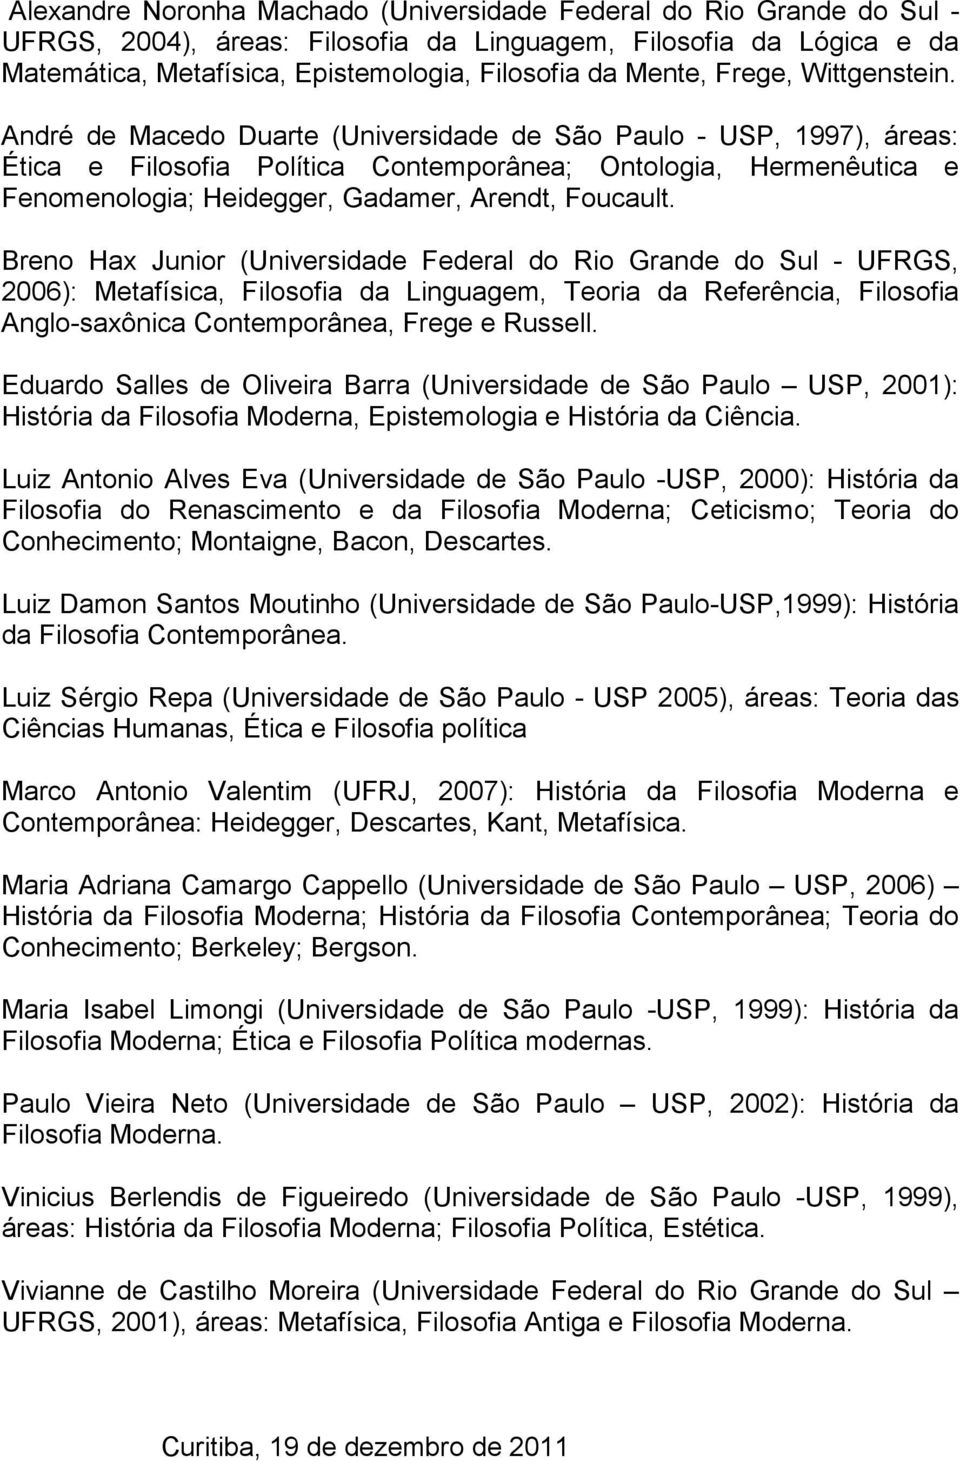 André de Macedo Duarte (Universidade de São Paulo - USP, 1997), áreas: Ética e Filosofia Política Contemporânea; Ontologia, Hermenêutica e Fenomenologia; Heidegger, Gadamer, Arendt, Foucault.